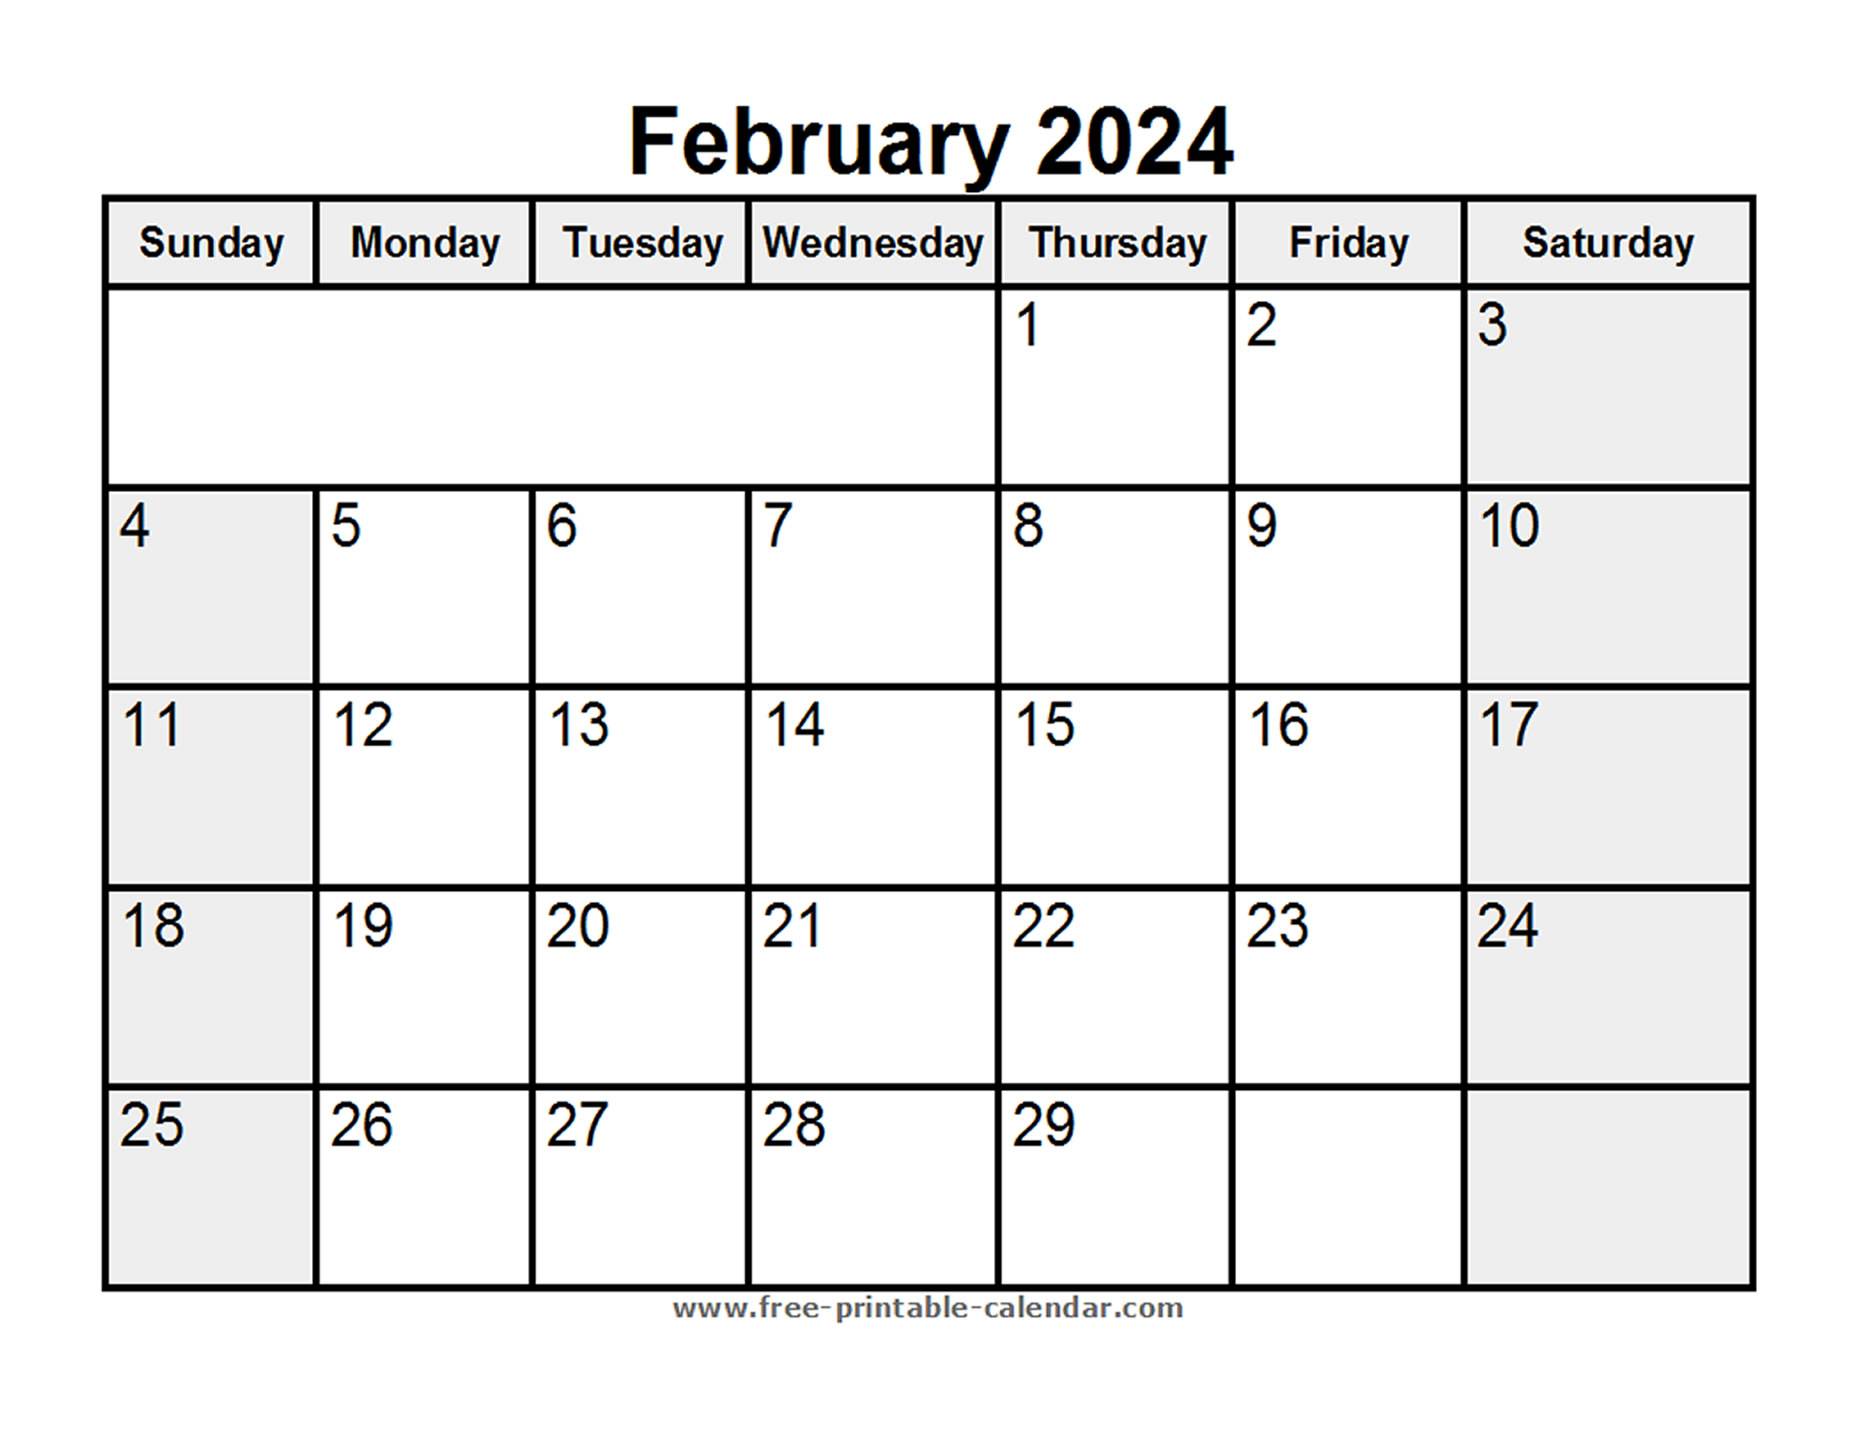 Printable February 2024 Calendar - Free-printable-calendar.com